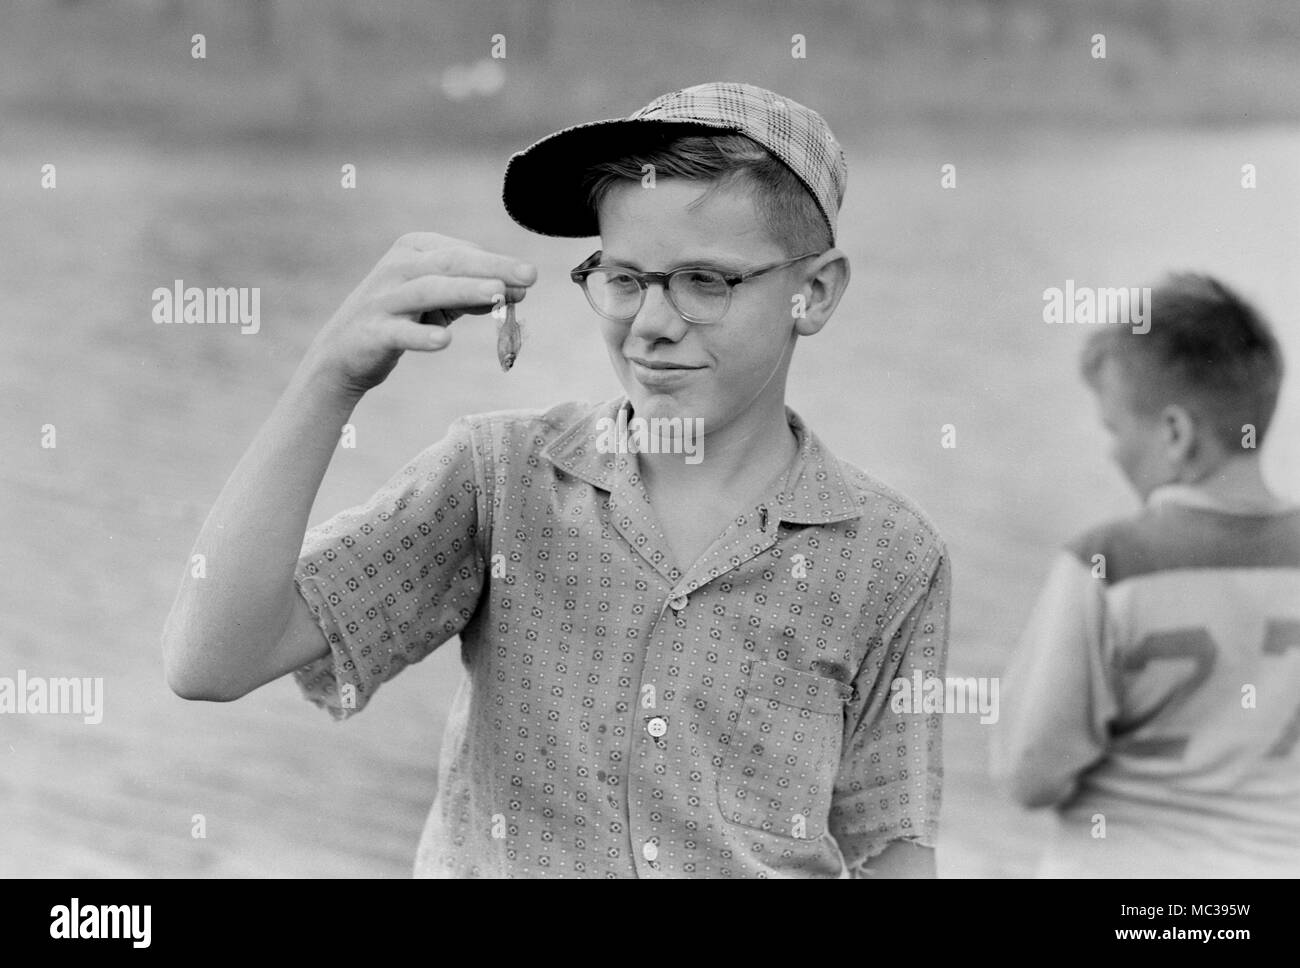 Un jeune garçon semble inquiète au sujet de la taille de ses prises, ca. 1960. Banque D'Images